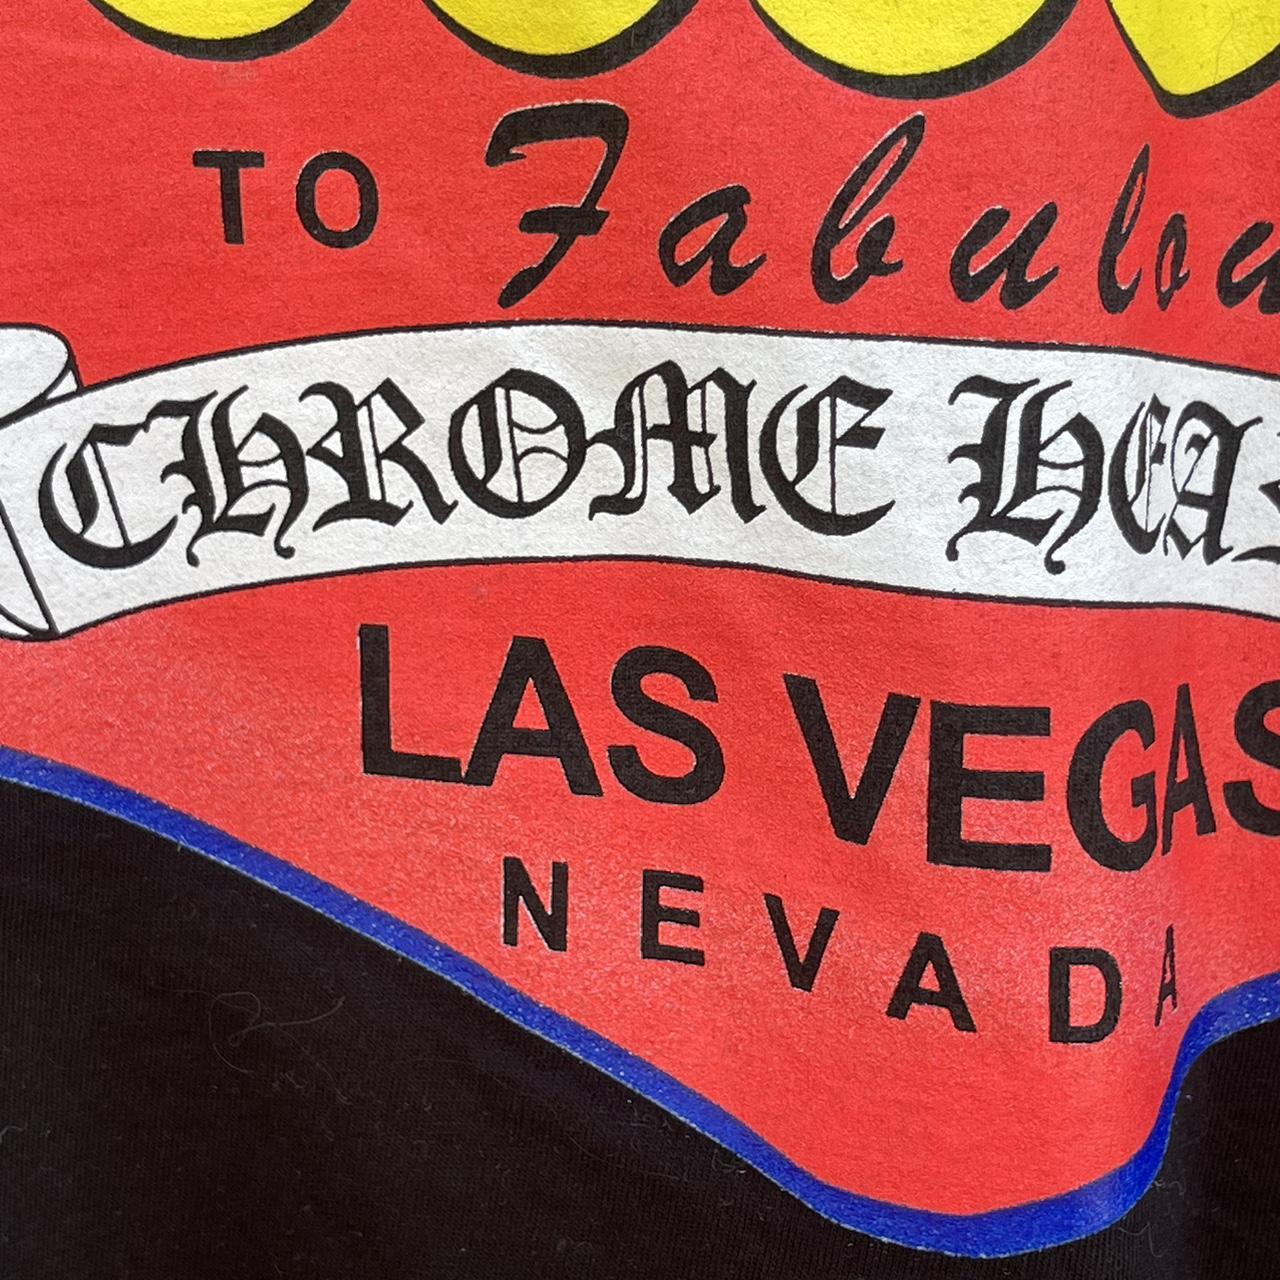 Vintage Chrome Hearts Las Vegas exclusive single - Depop